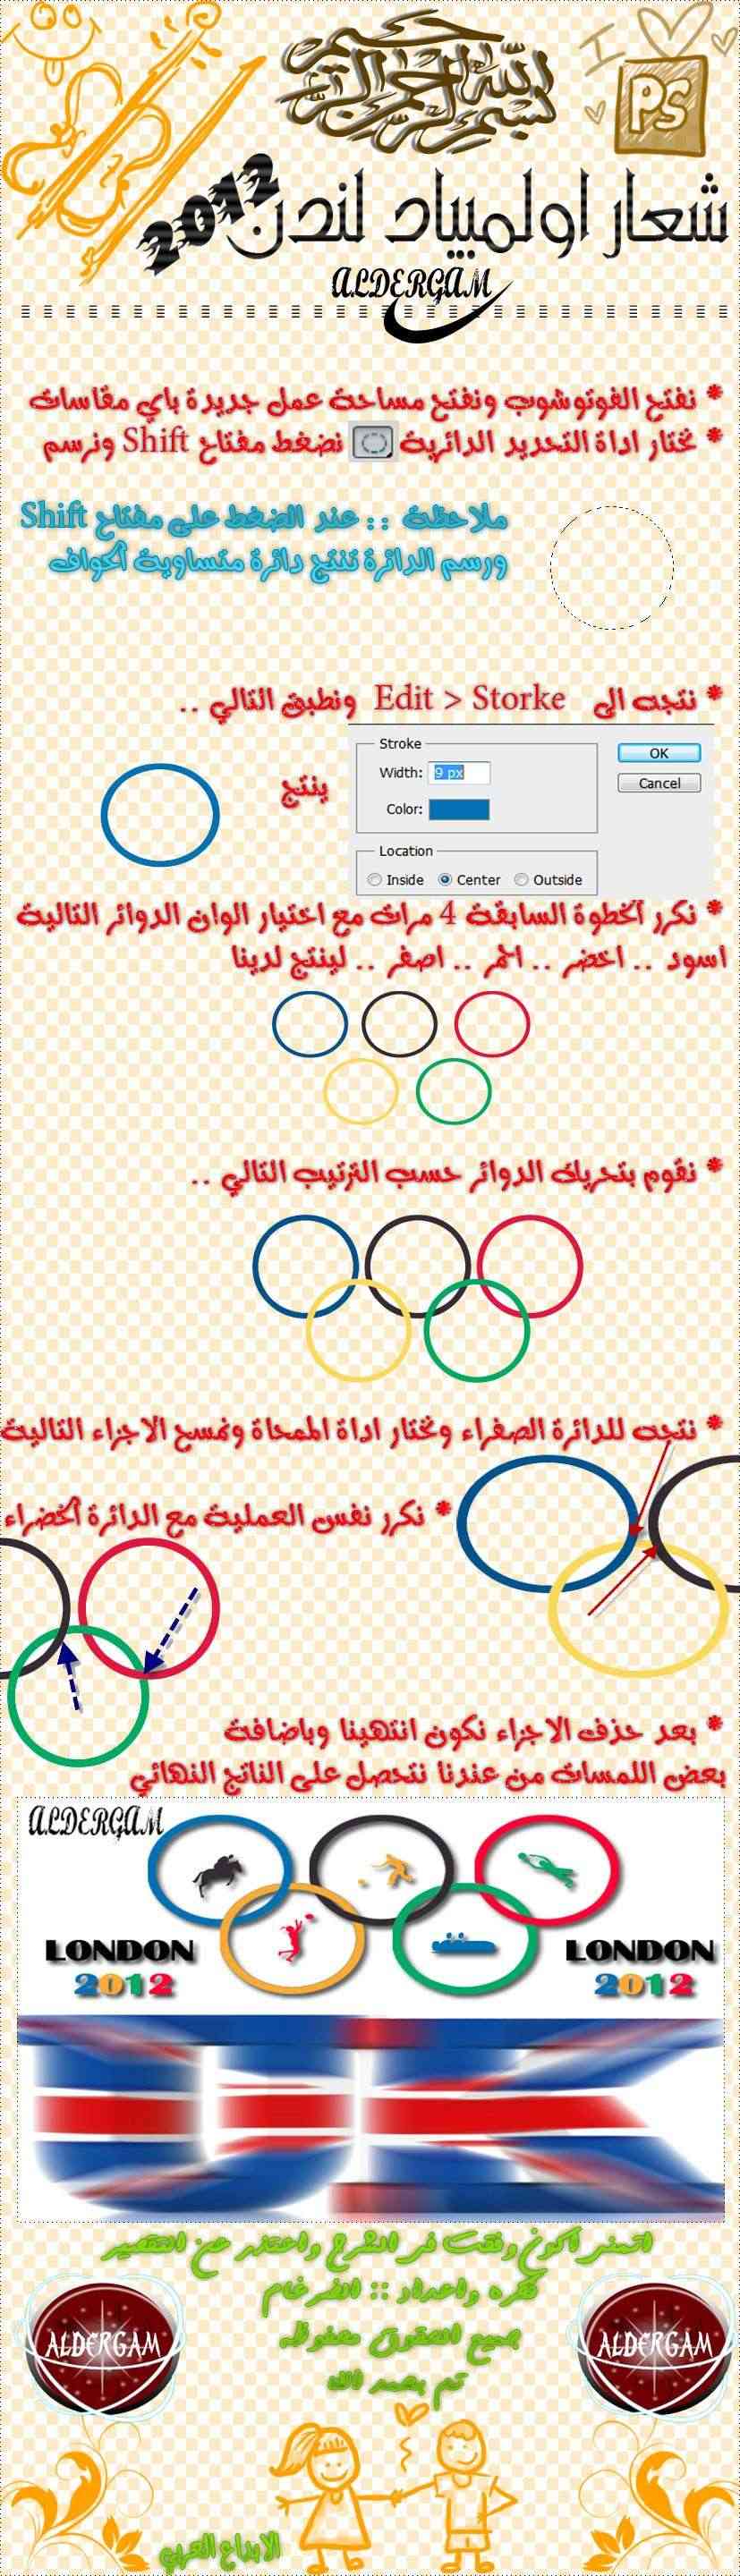 تصميمـ شعار اولمبياد لندن  - صفحة 3 London12